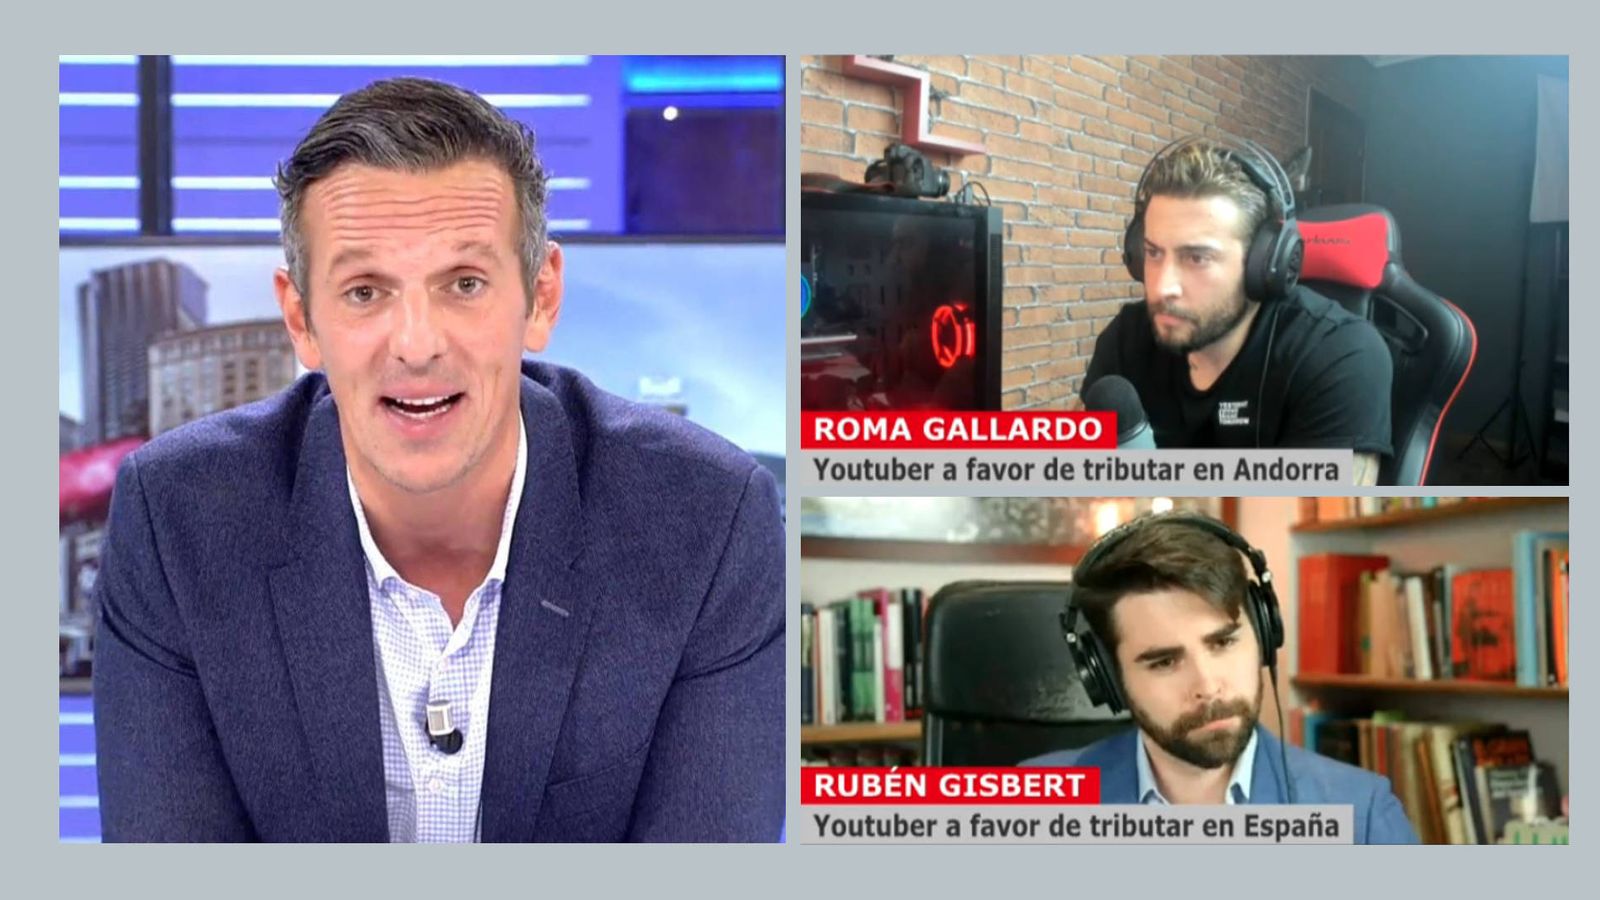 Roma Gallardo (esquina superior derecha) y Rubén Gisbert (esquina inferior derecha), durante una intervención en el canal Cuatro. (Mediaset)